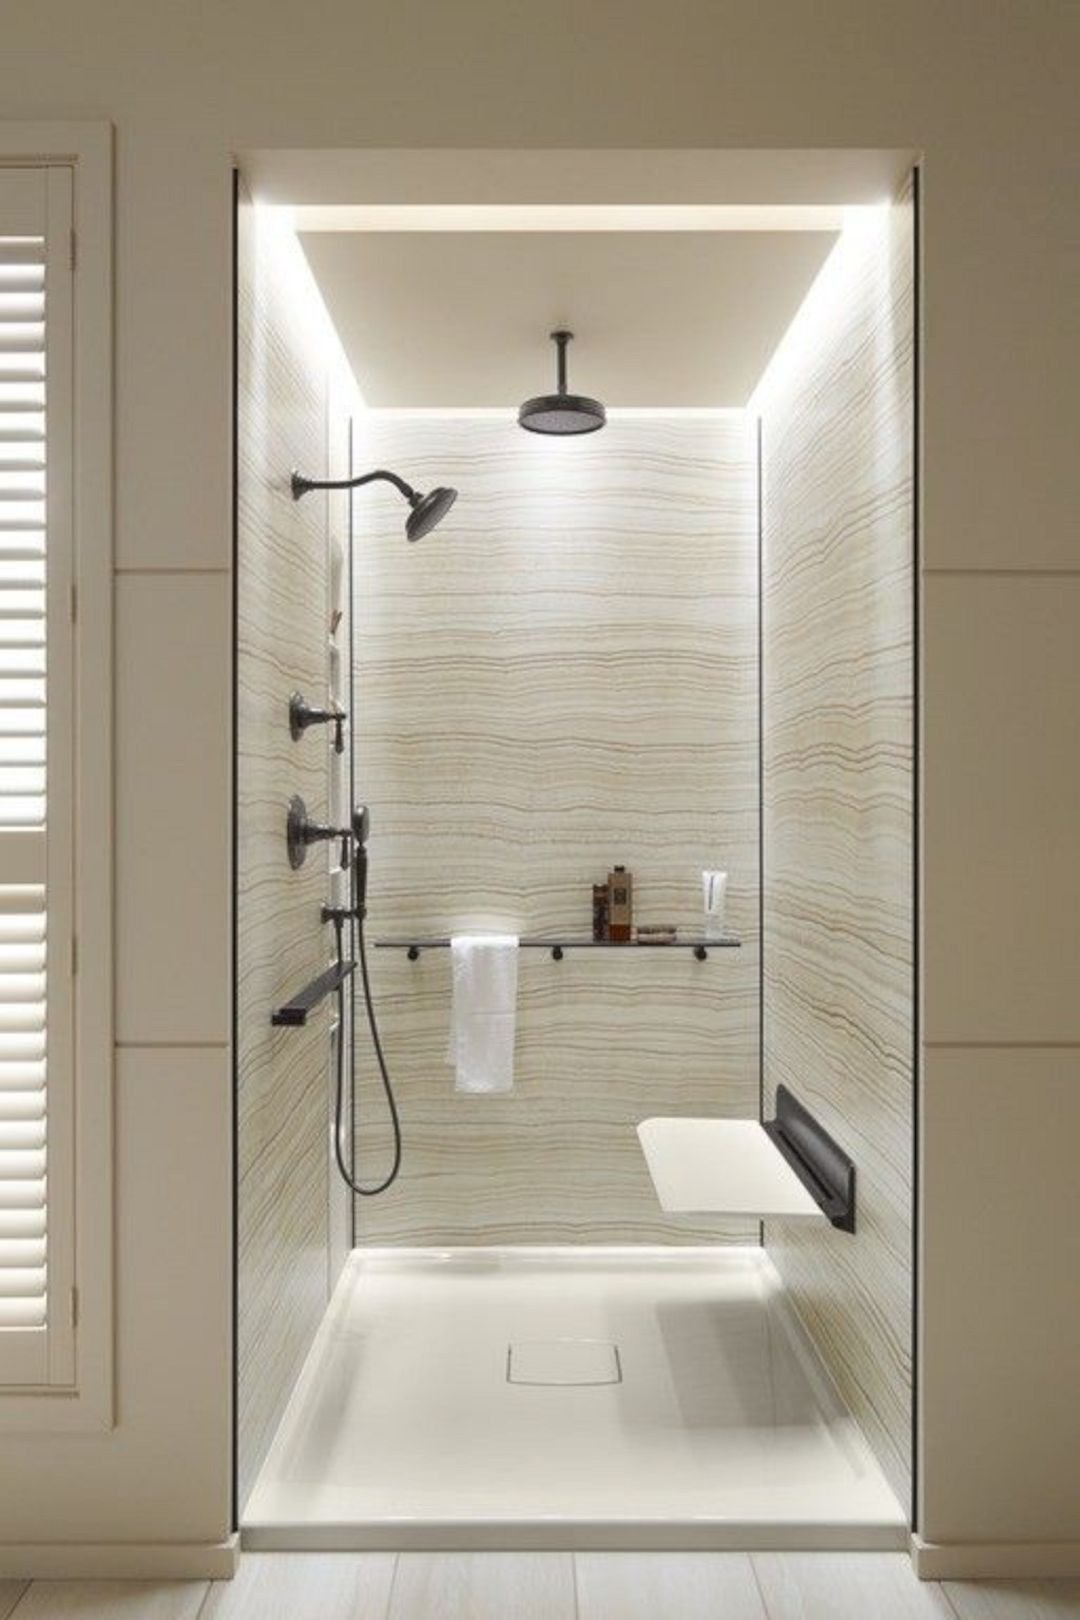 Shower douche. Стильные душевые комнаты. Стильная душевая. Современная ванная с душем. Подсветка в душевой.